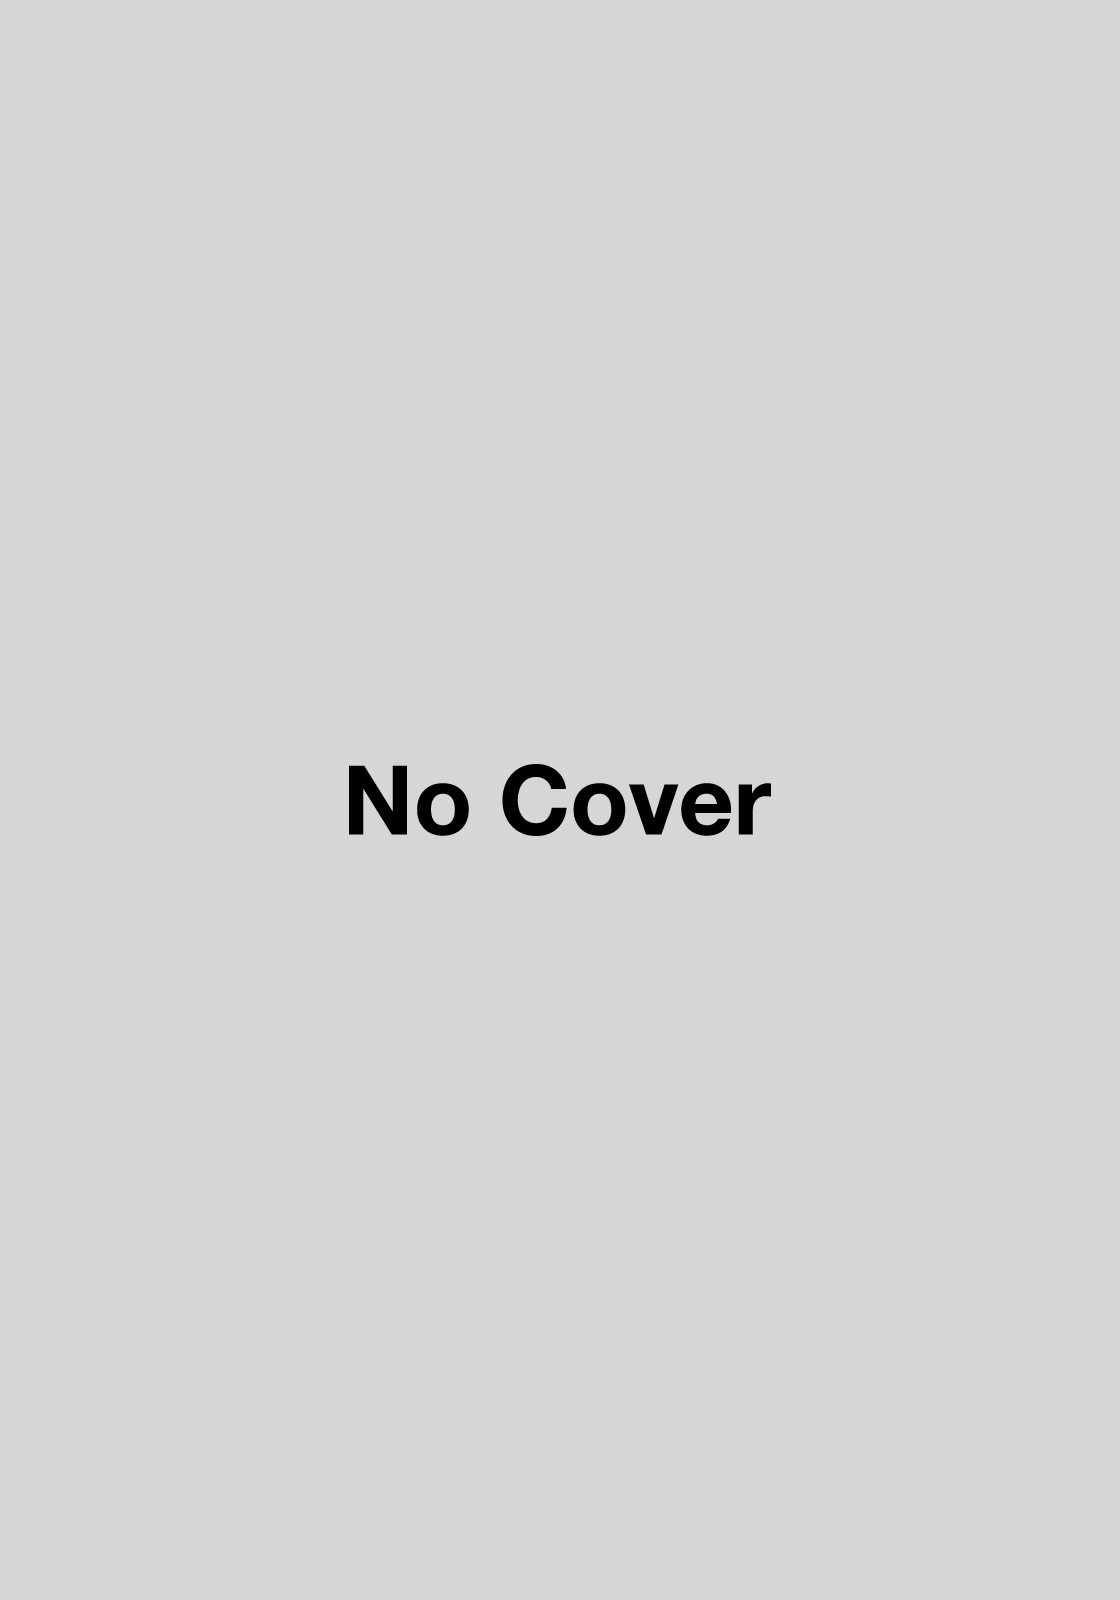 Placeholder cover for Sid Meier's Antietam!.